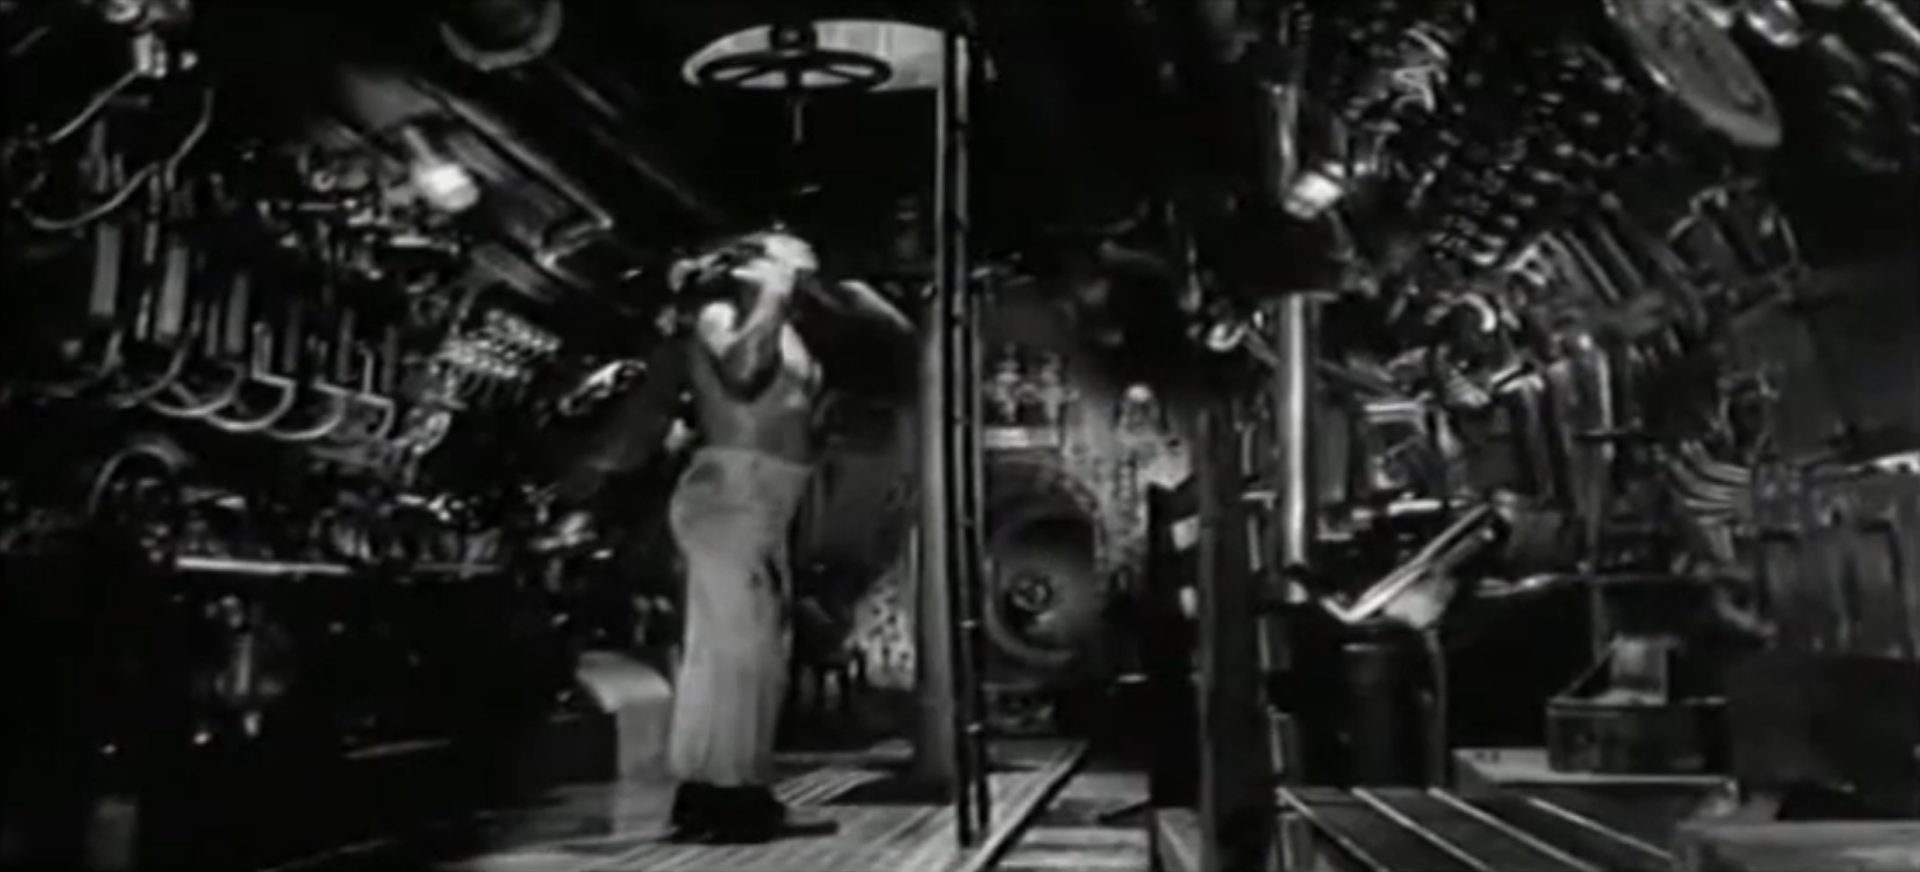 Schwarz-Weiß-Aufnahme vom Innern des italienischen U-Bootes mit seinen unzähligen Apparaturen; ein einzelner Seemann mit unbekleidetem Oberkörper steht unterhalb einer geöffneten Luke, durch ein wenig Tageslicht schimmert.